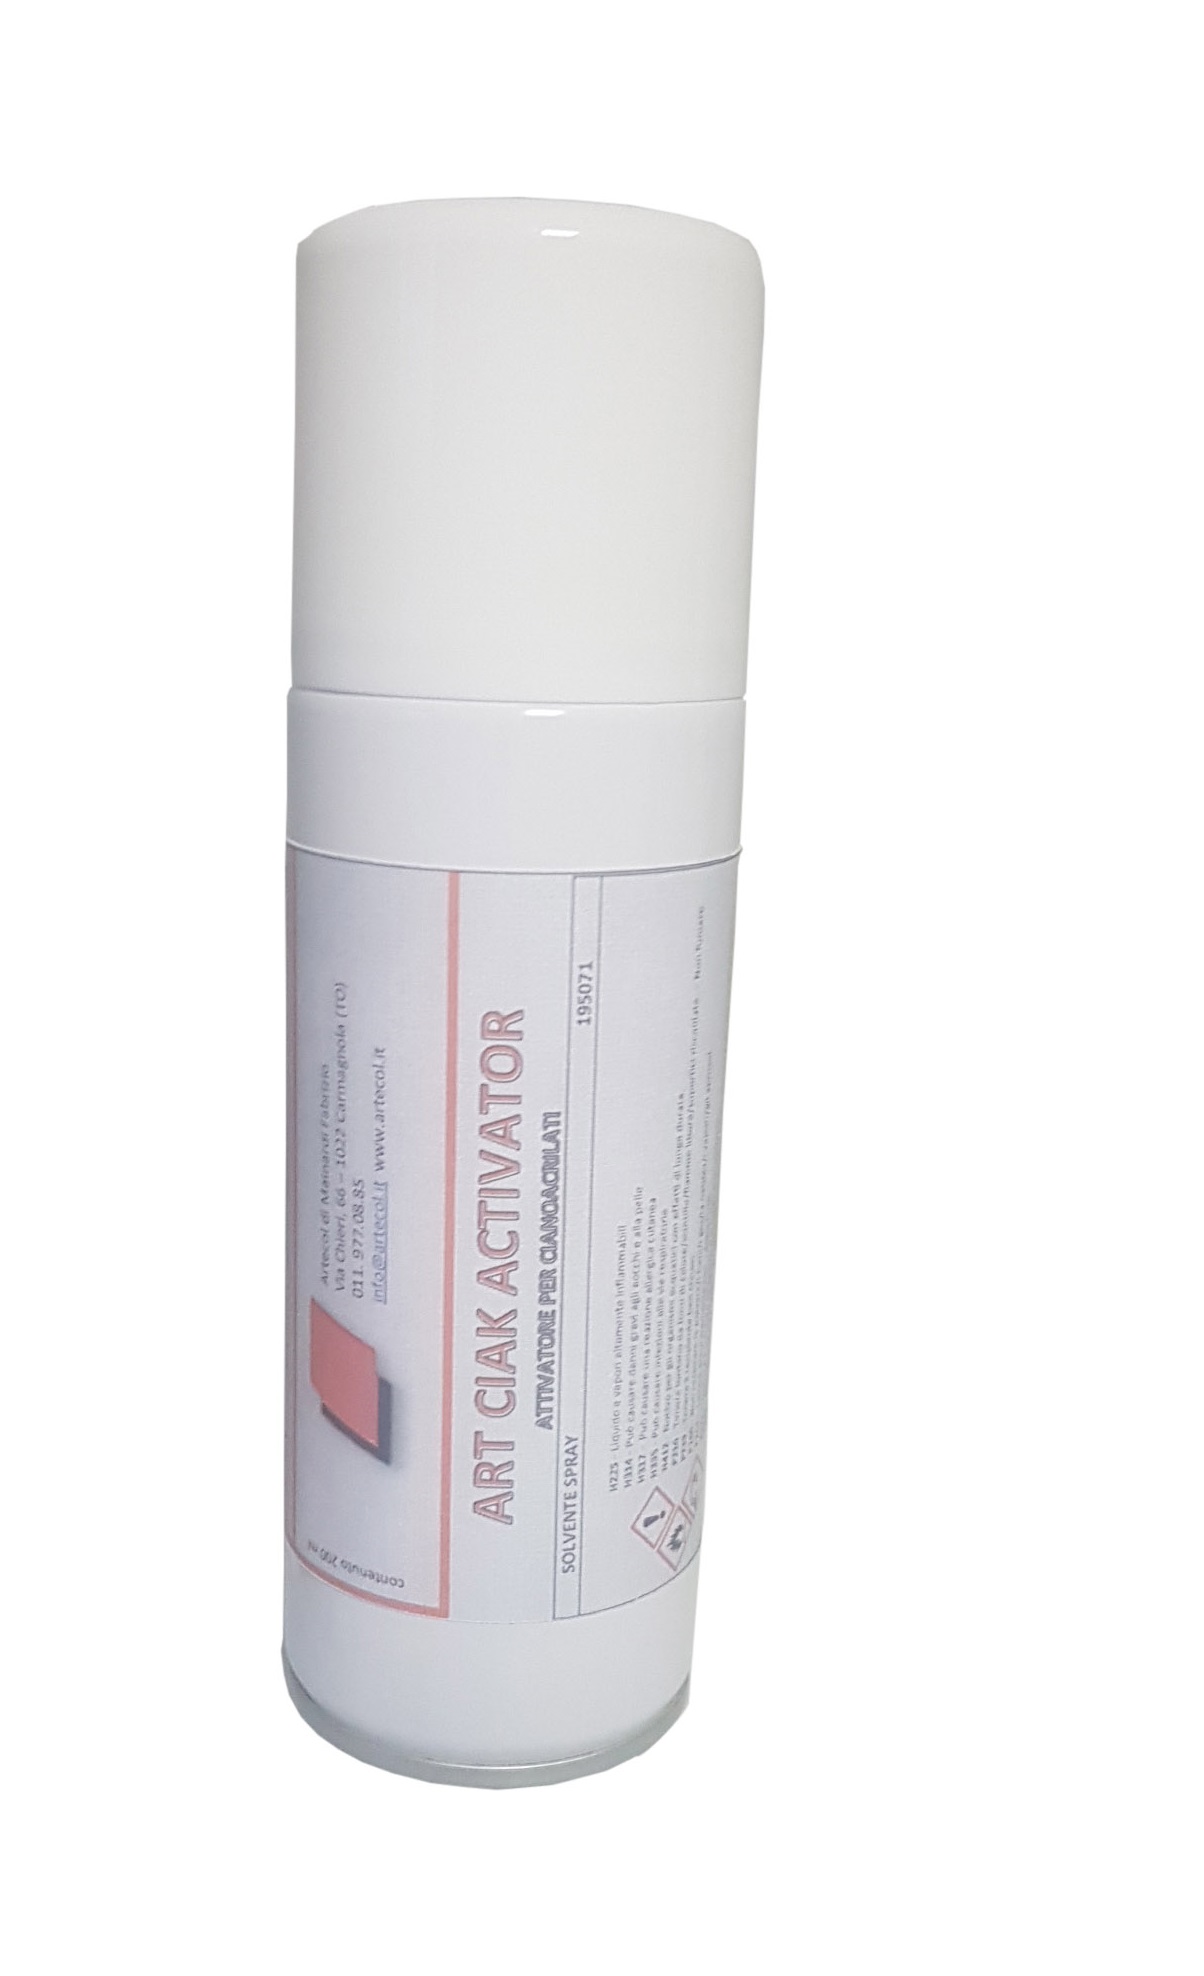 ART-CIAK ACTIVATOR 200 ml (solvente spray) da ARTECOL